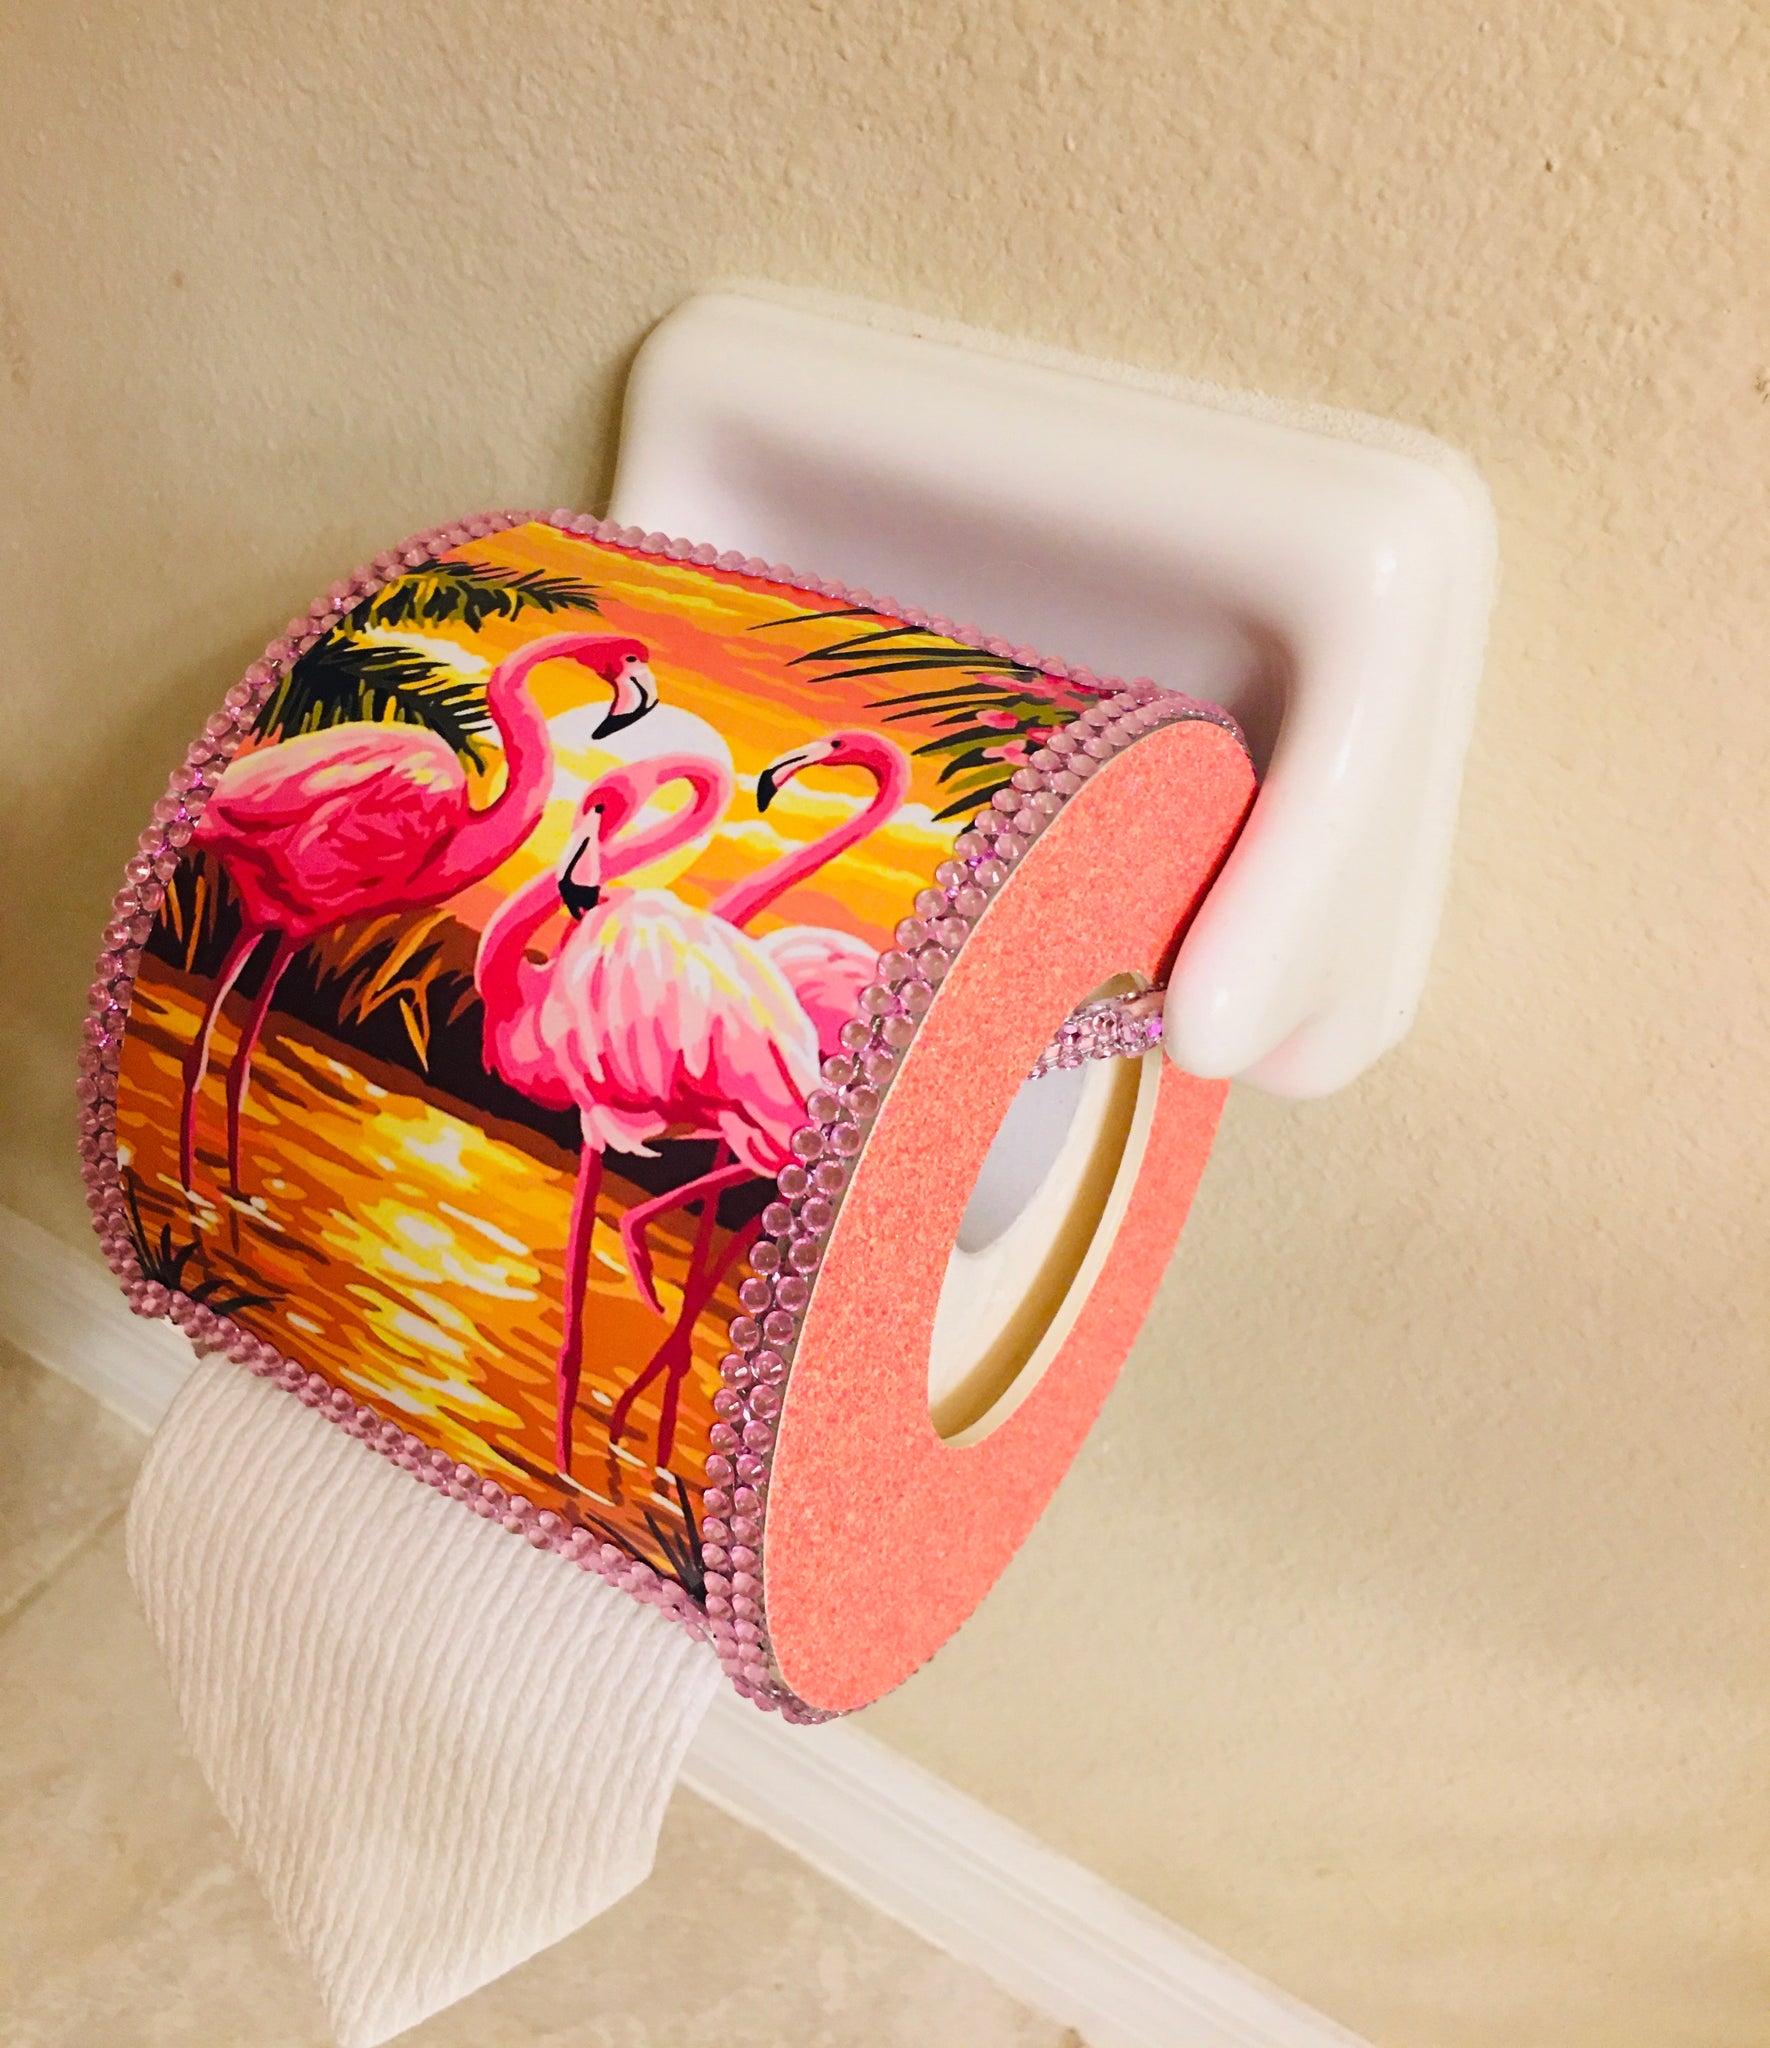 Tropical Pink Flamingo Haitian Metal Art Toilet Paper or Hand Towel Holder M244